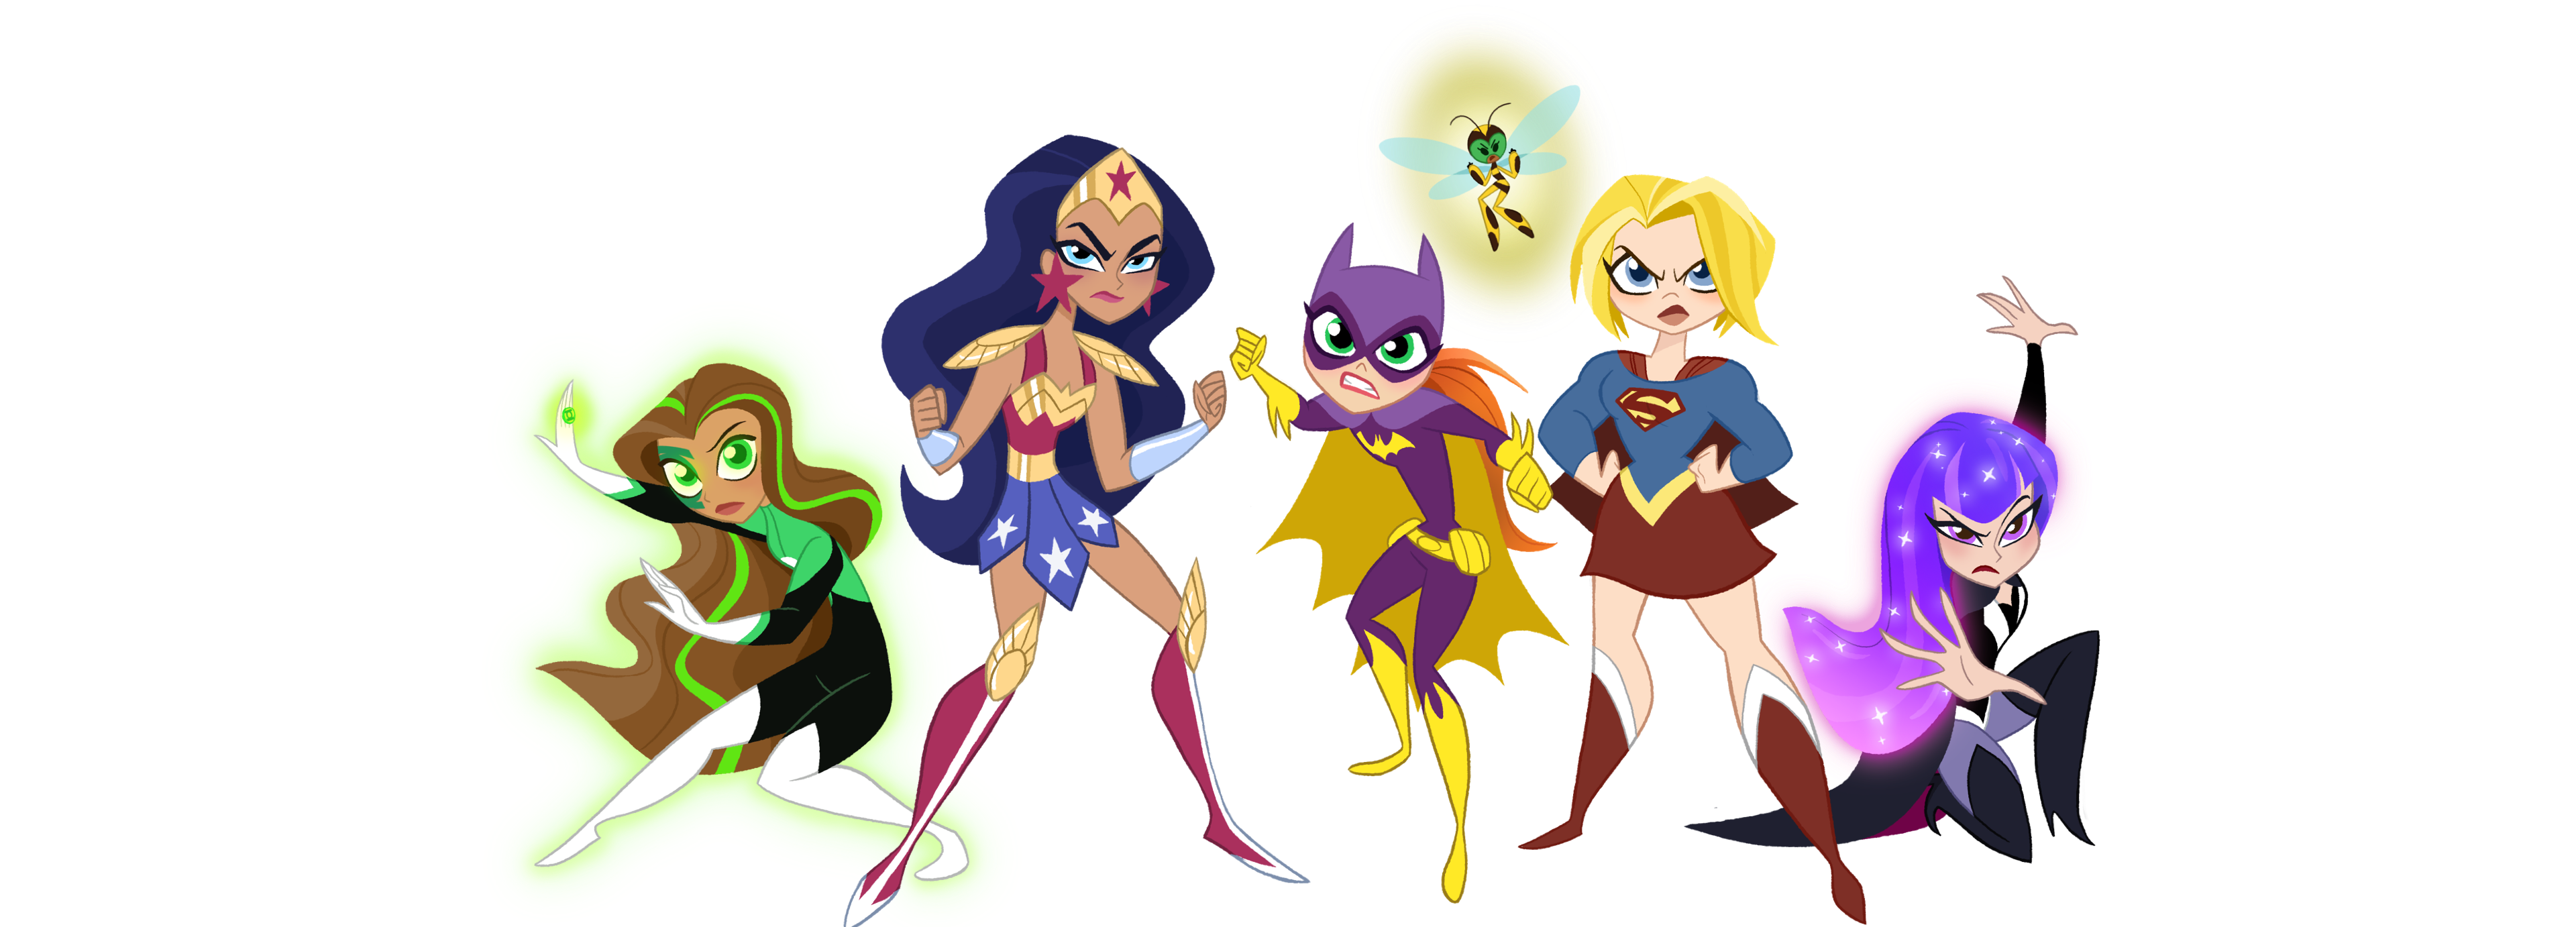 contaminación volverse loco Altoparlante Juega a DC Super Hero Girls | Juegos online gratis de DC Super Hero Girls |  Cartoon Network